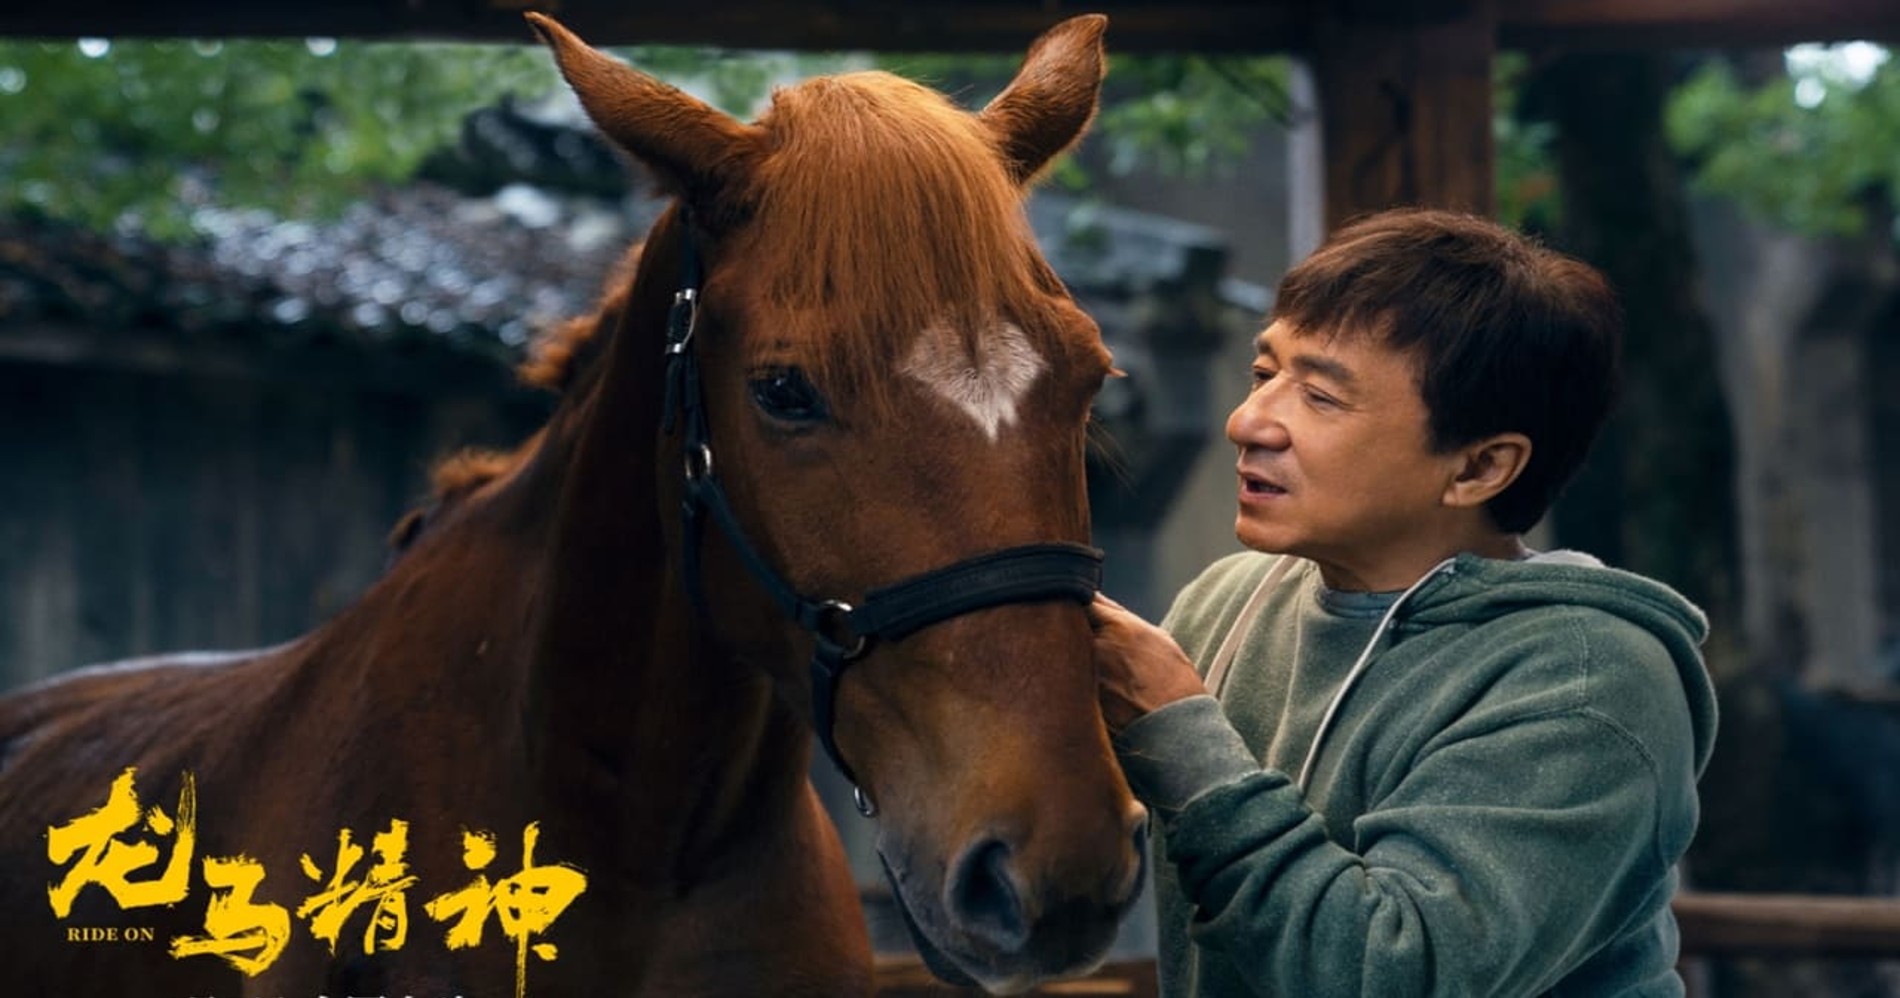 Hal-hal Menarik dari Film Terbaru Jackie Chan 'Ride On